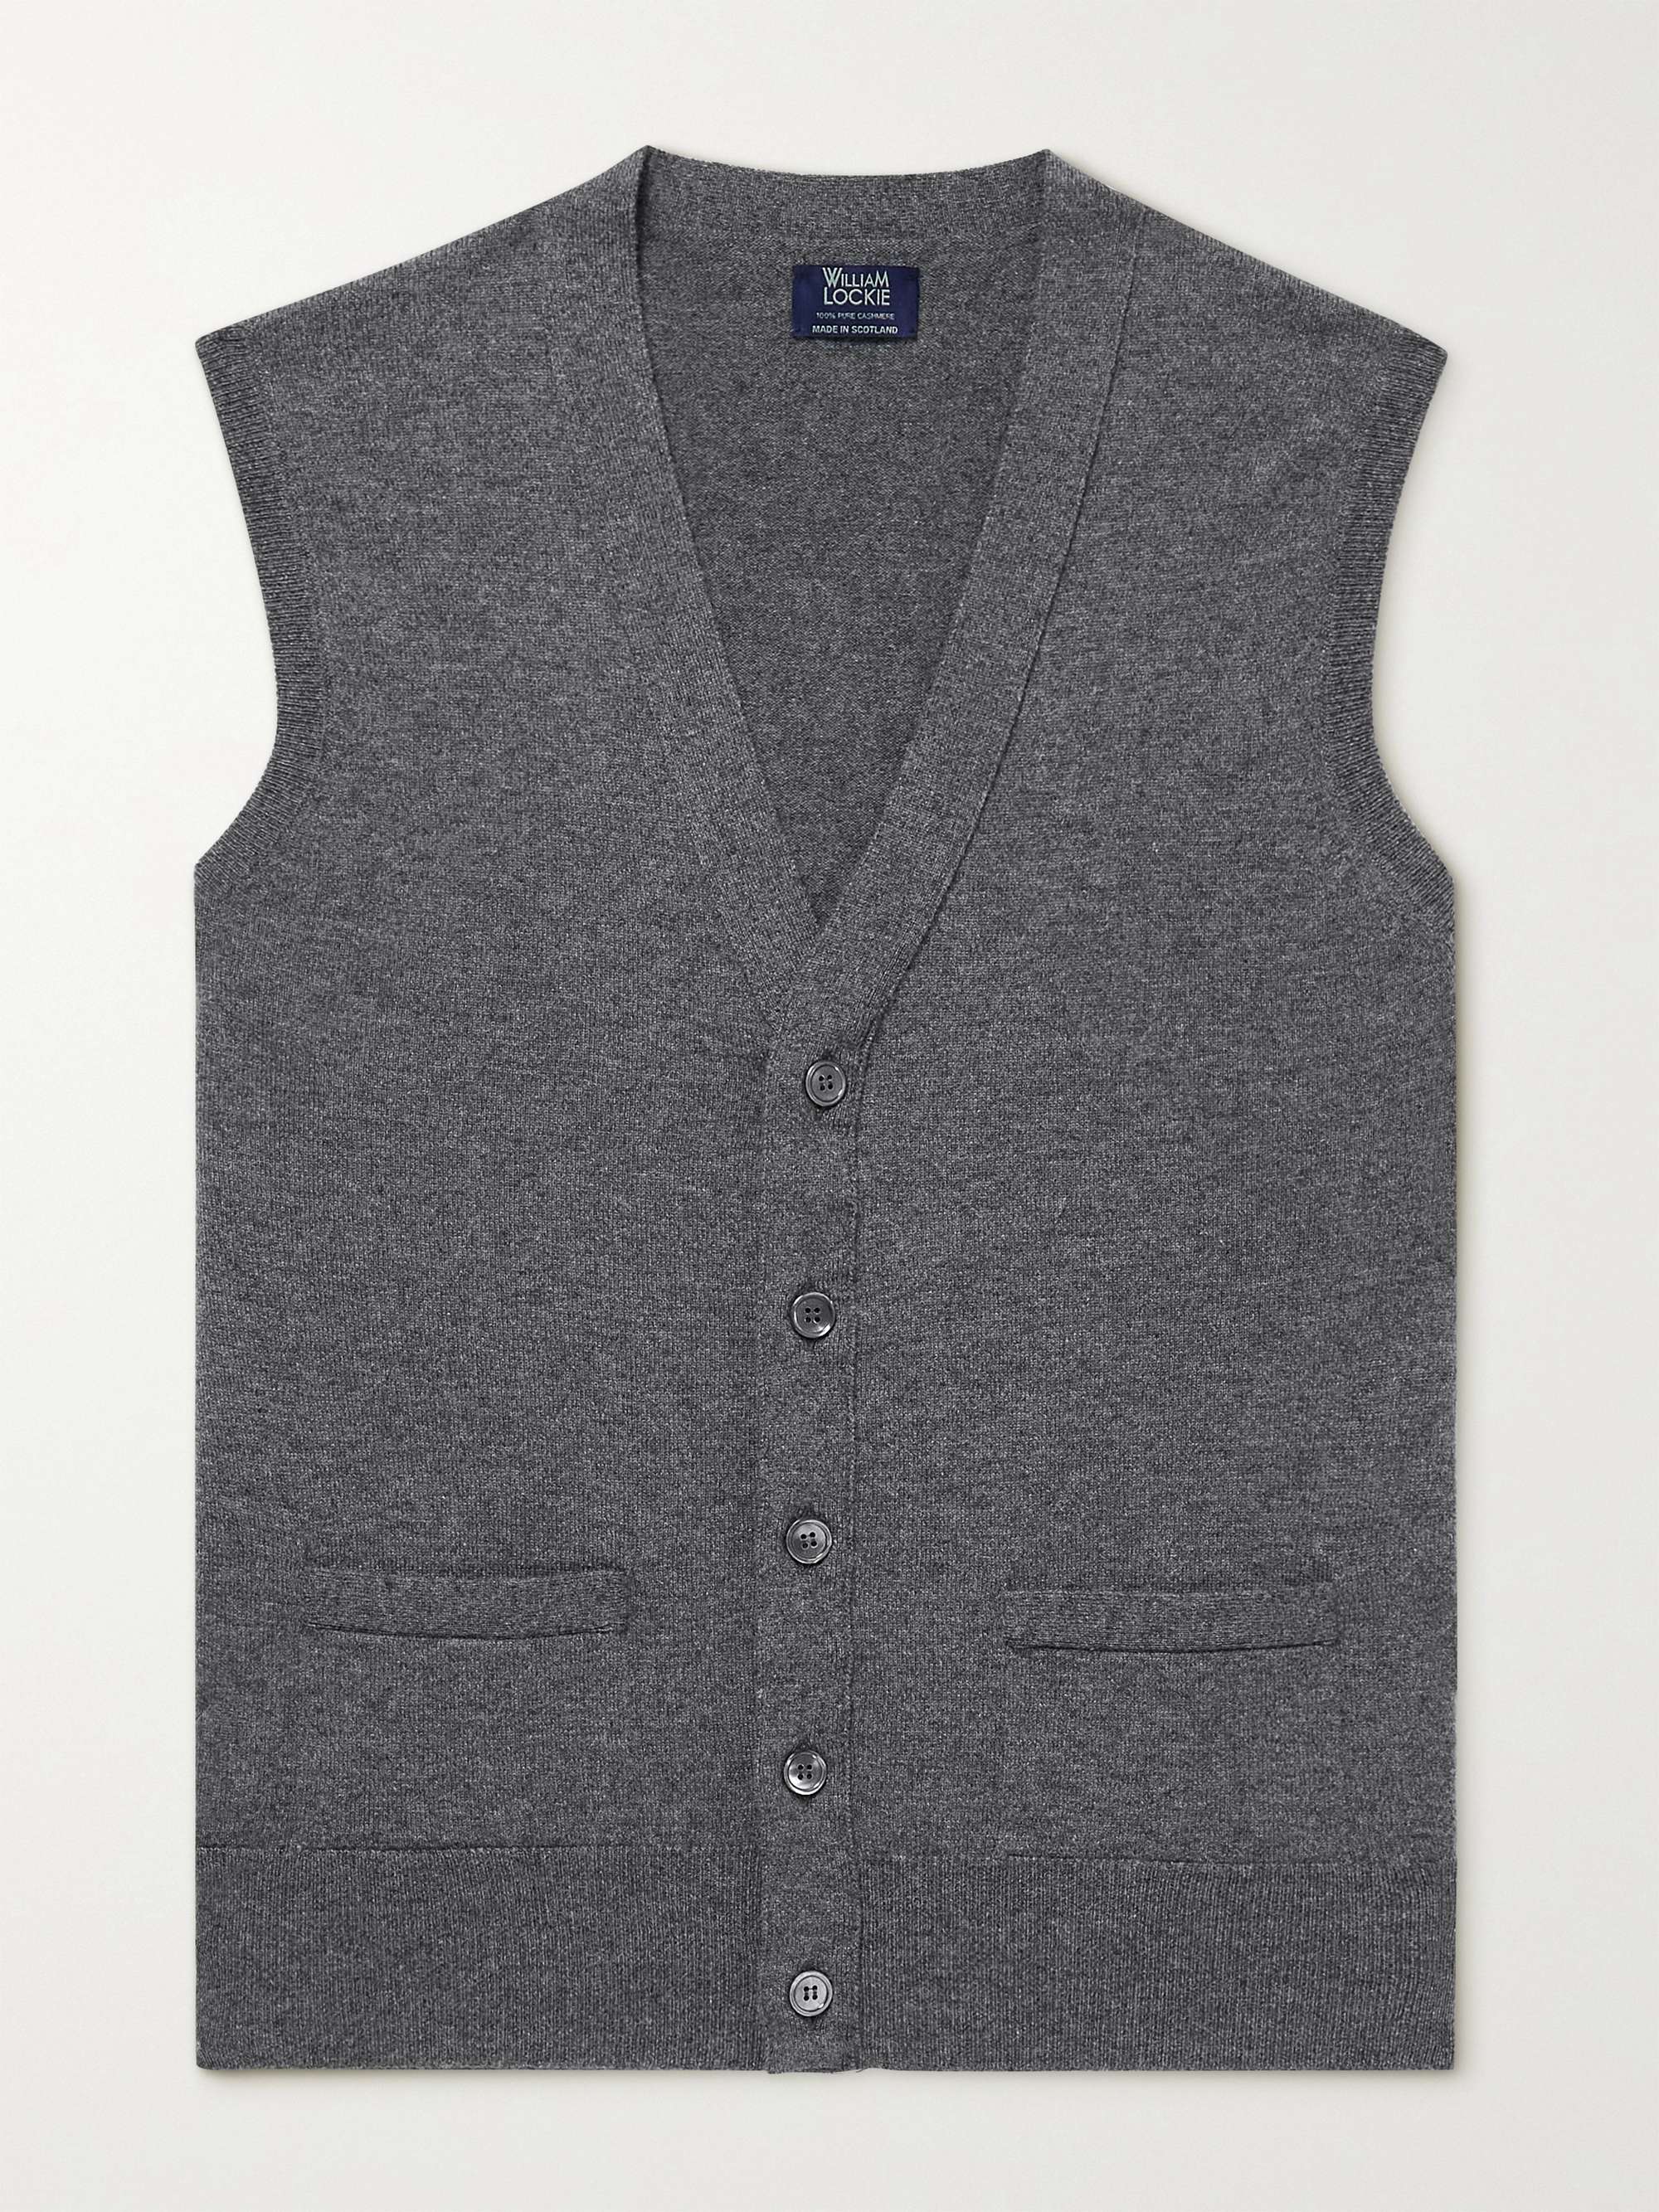 WILLIAM LOCKIE Oxton Cashmere Sweater Vest